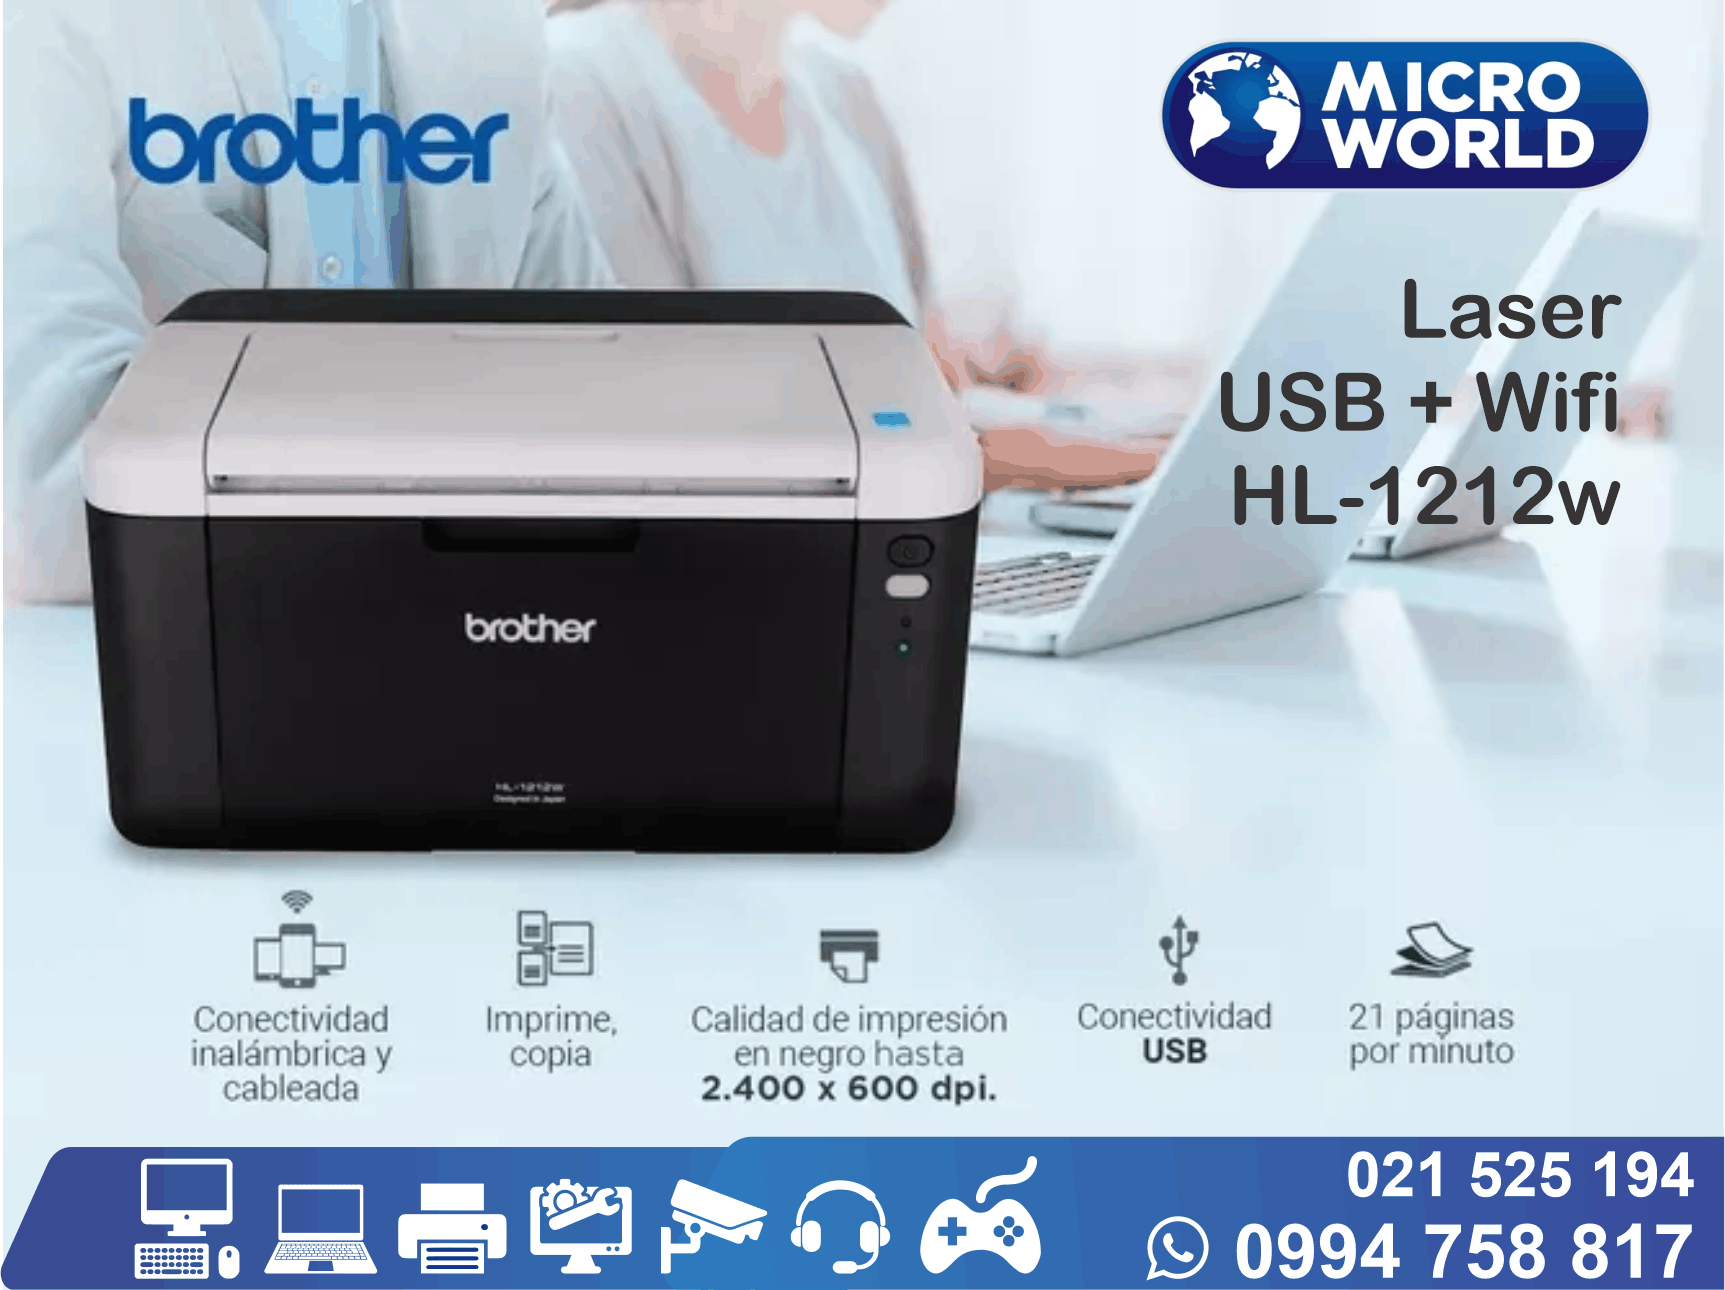 Impresora Brother Laser wifi HL-1212w – Microworld S.A.